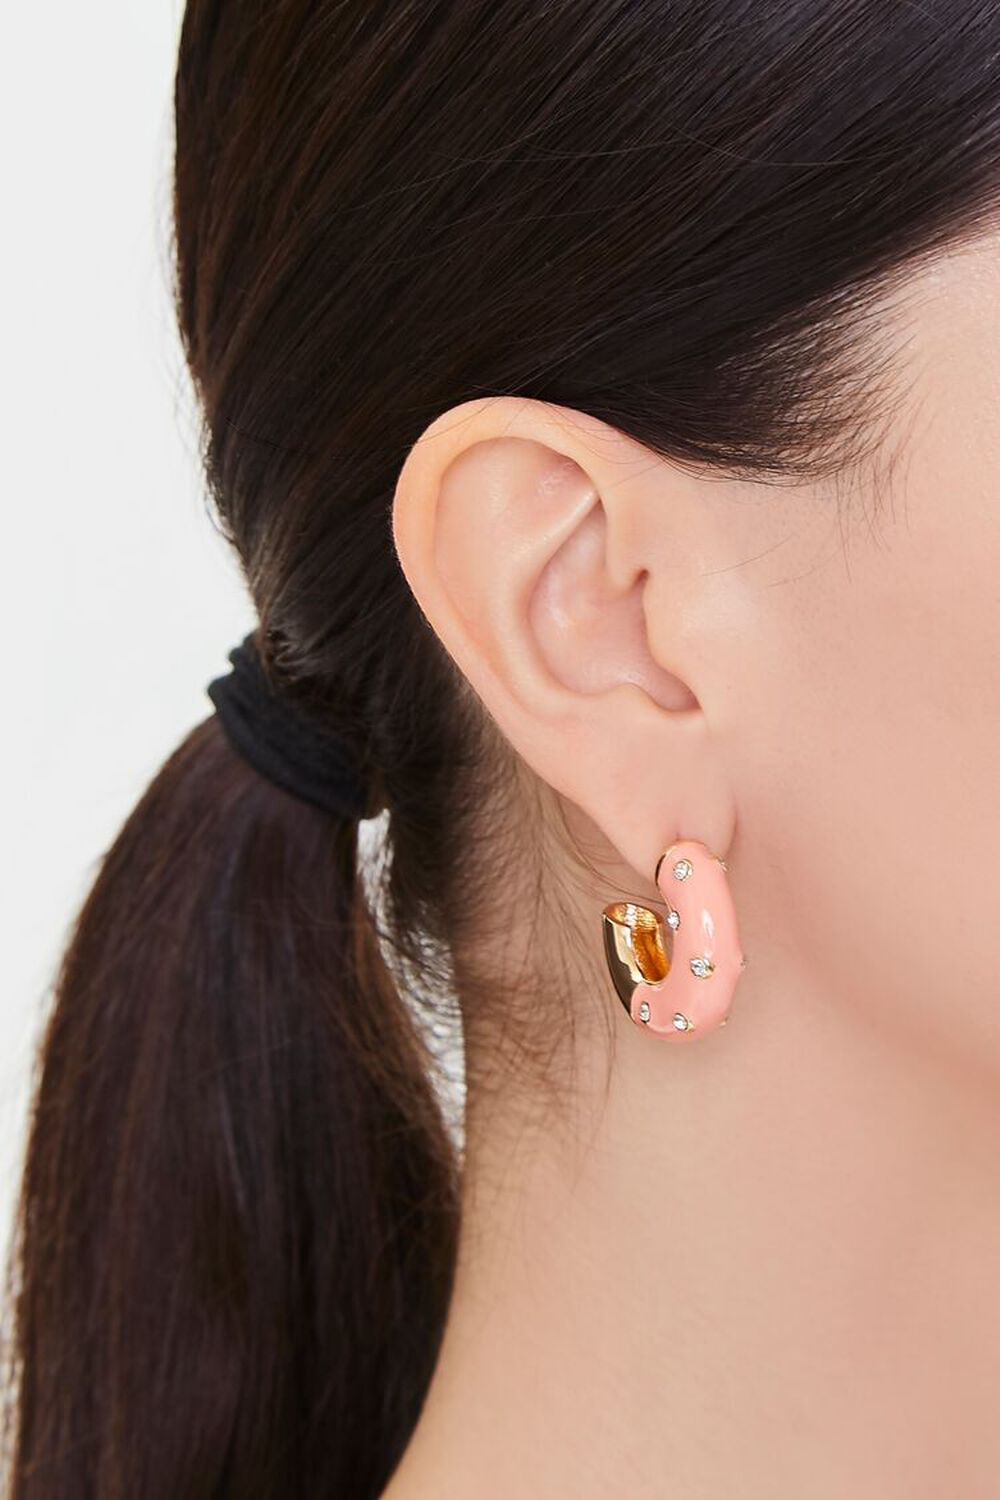 PINK Rhinestone Open-End Hoop Earrings, image 1